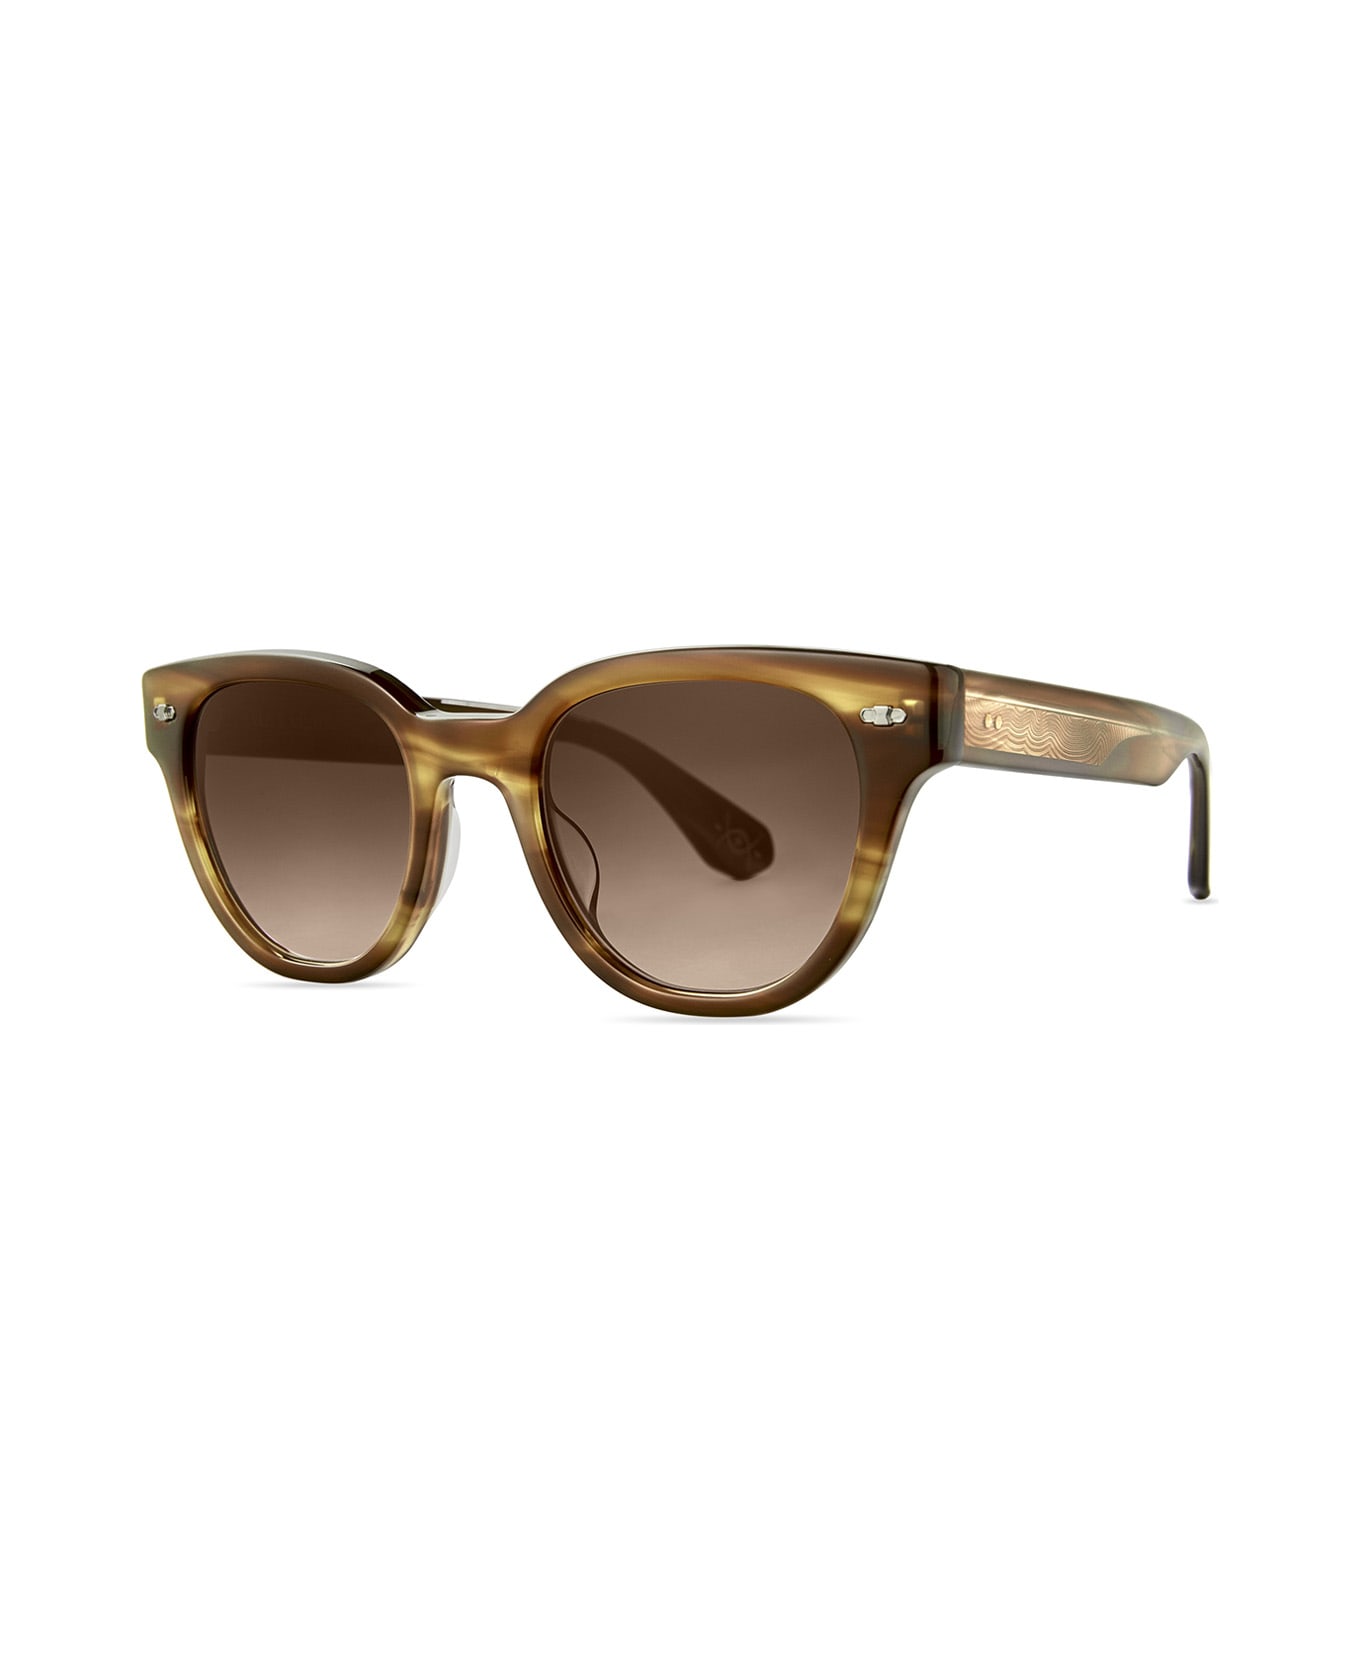 Mr. Leight Jane S Beachwood-white Gold/saturn Gradient Sunglasses - Beachwood-White Gold/Saturn Gradient